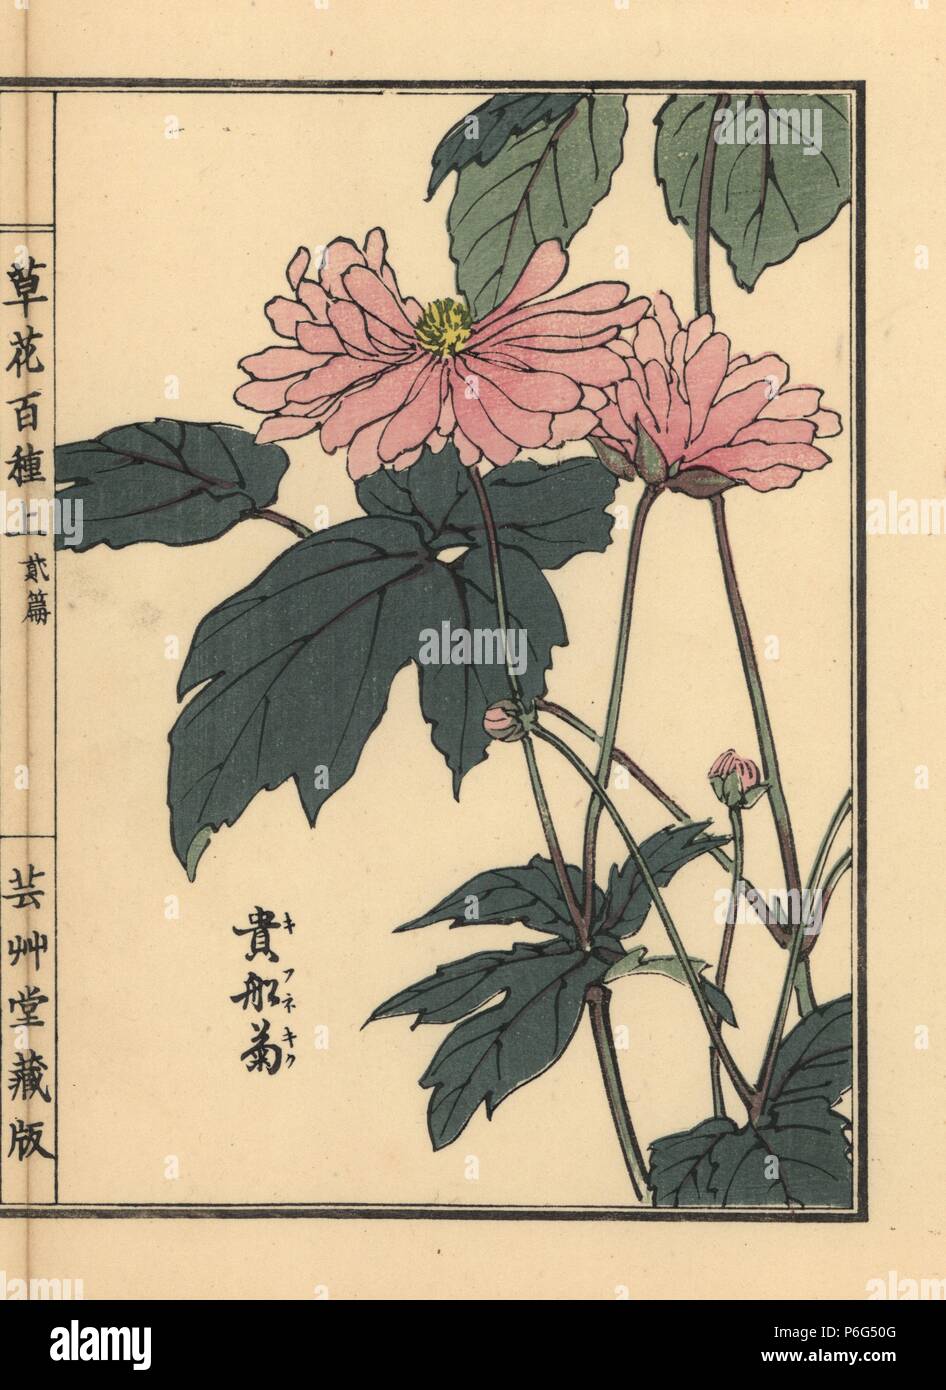 Japanese anemone, Anemone hupehensis var. japonica. Handcoloured woodblock print by Kono Bairei from Kusa Bana Hyakushu (One Hundred Varieties of Flowers), Tokyo, Yamada, 1901. Stock Photo